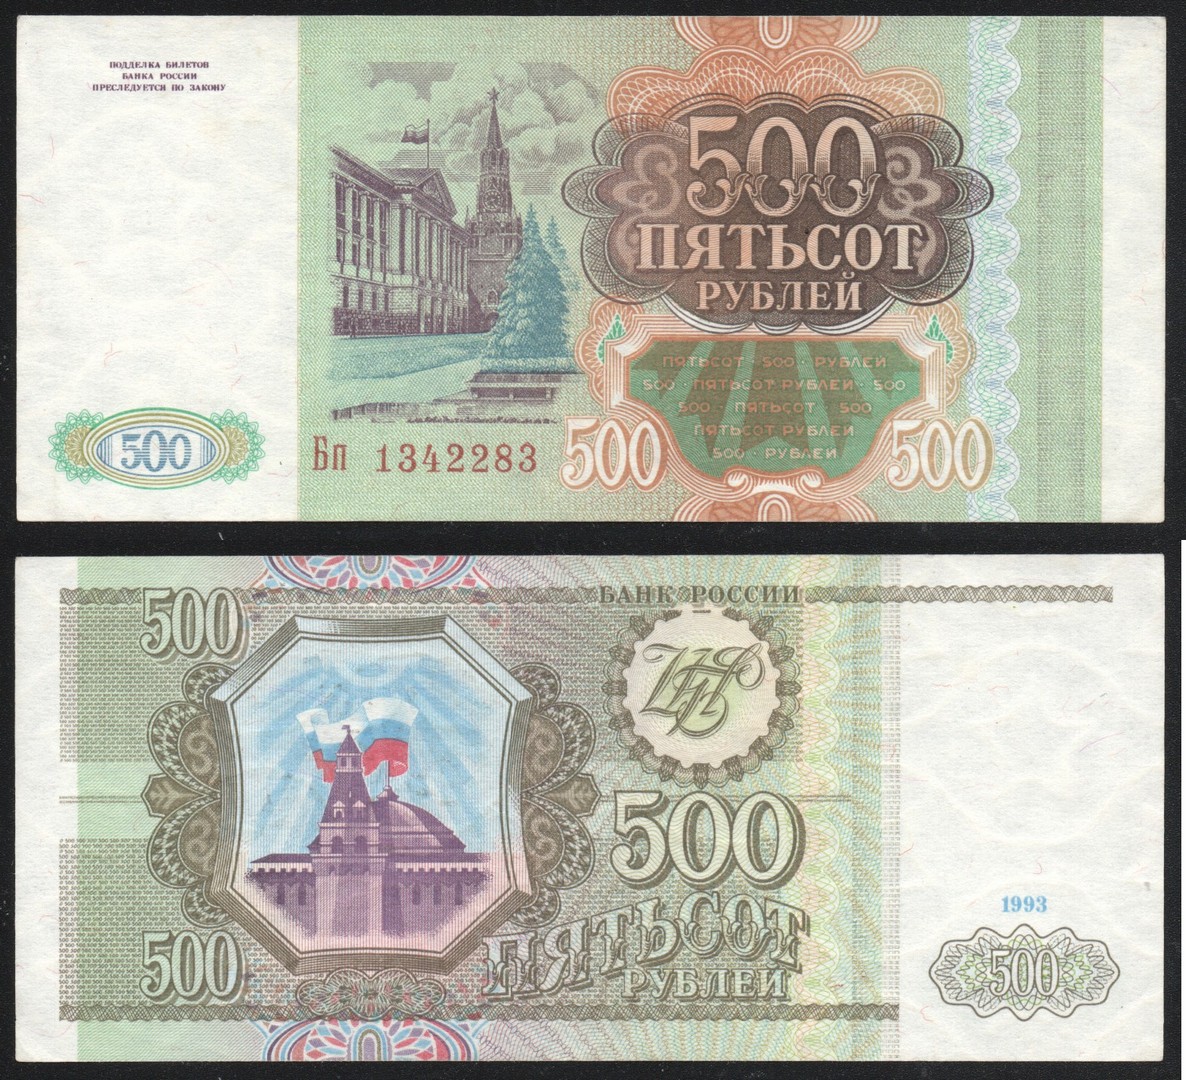 1993 p. 500 Рублей 1993. 500 Рублей 1993 года. Купюры СССР 1993 года.